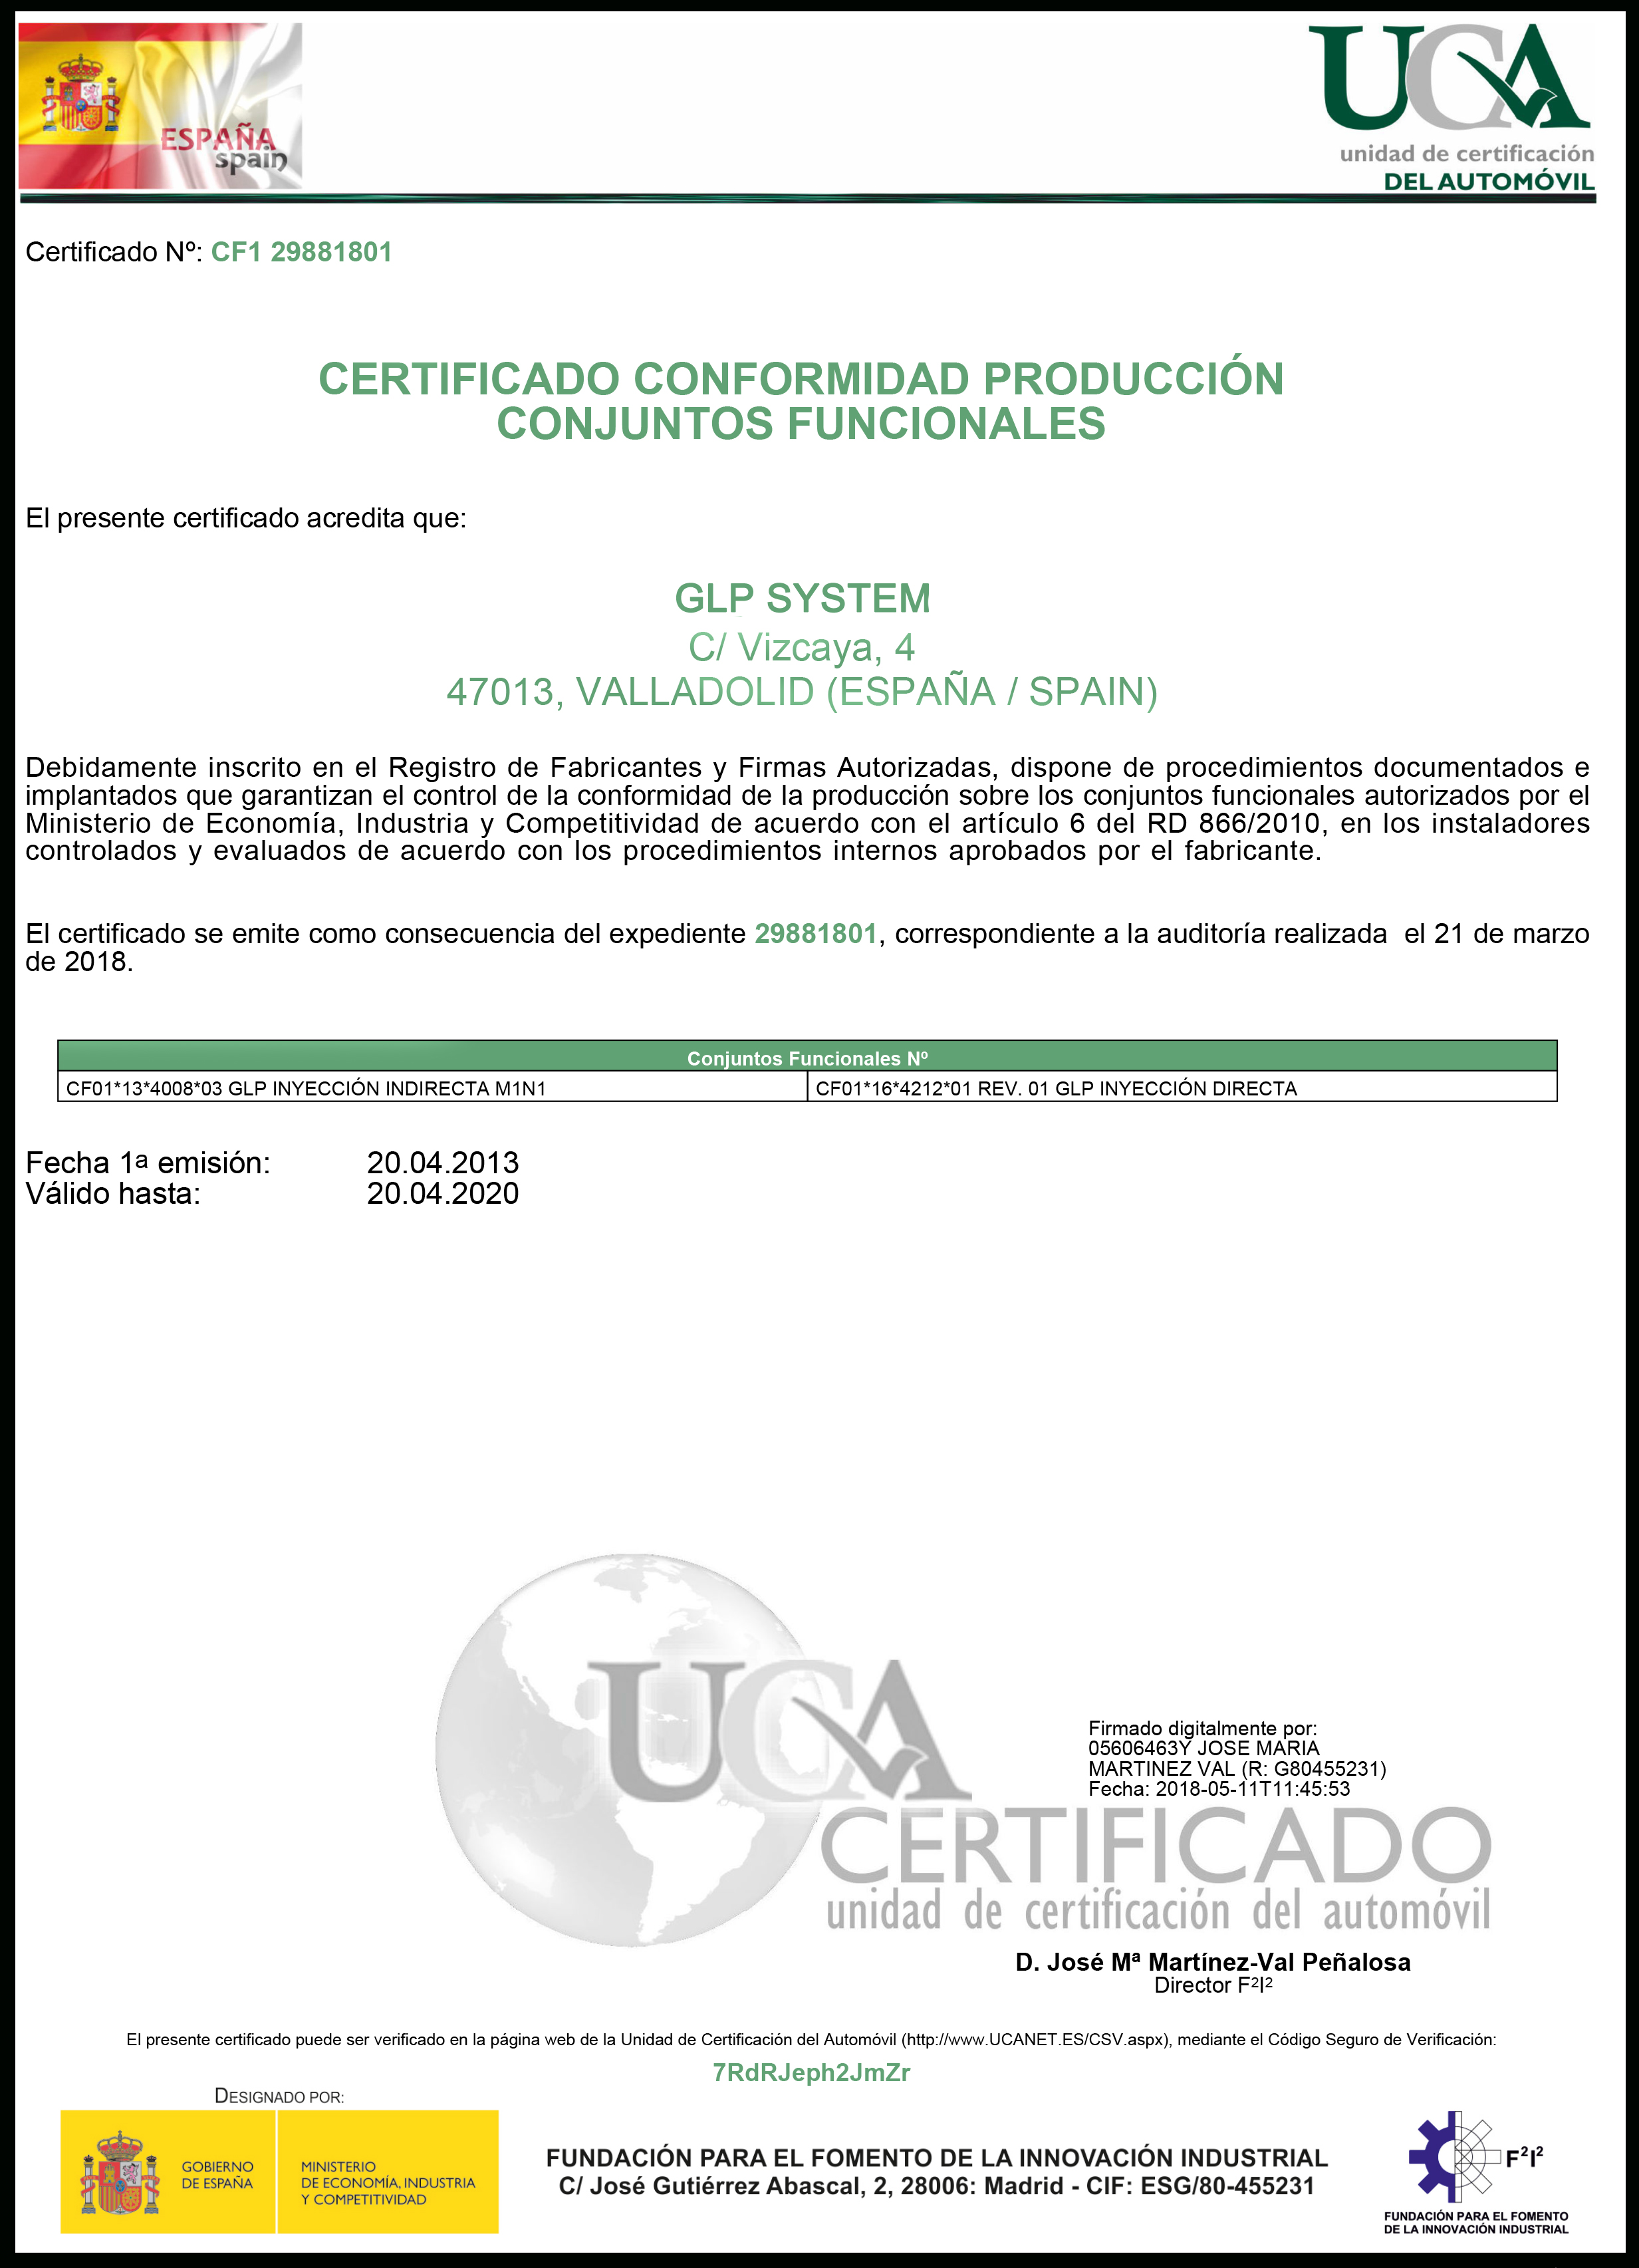 CertificadoUCA_CF129881801-11-05-18-11_4